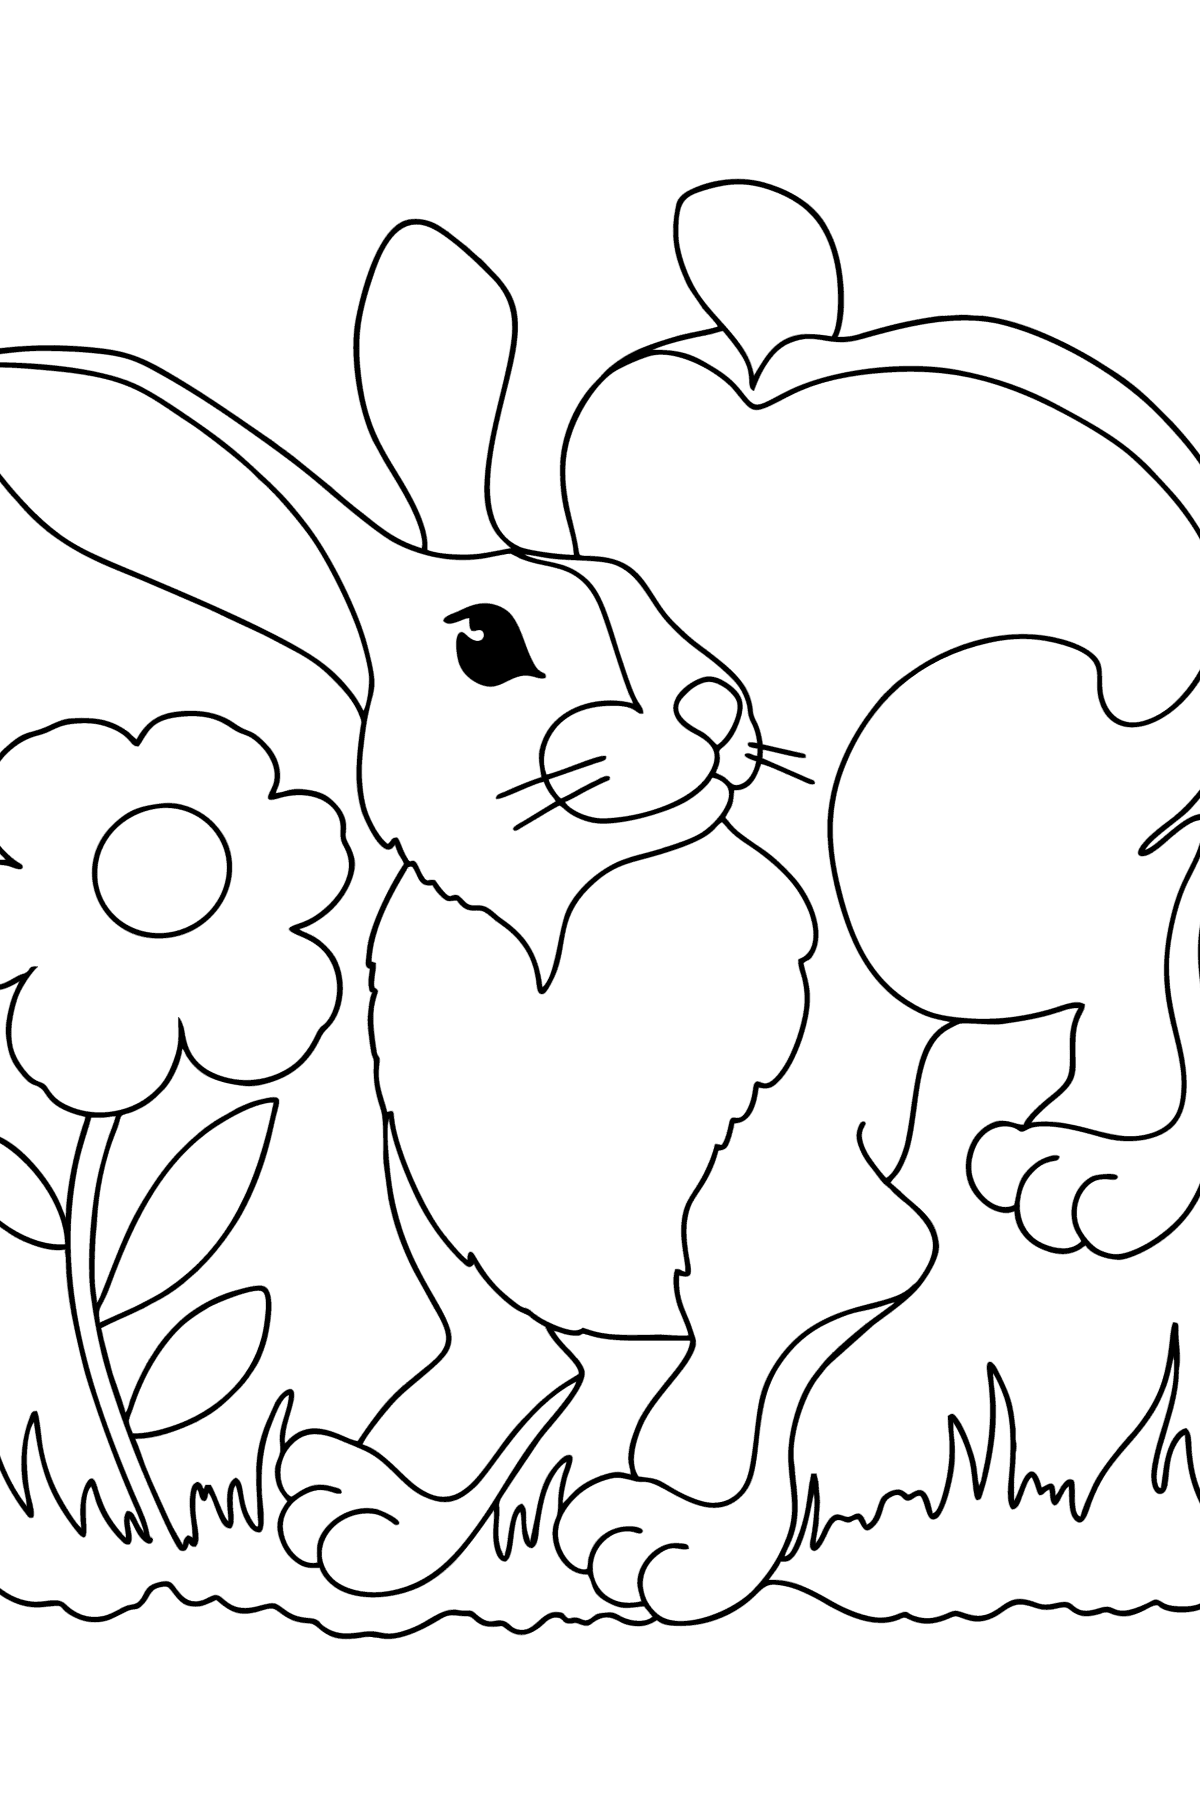 Boyama sayfası küçük tavşan - Boyamalar çocuklar için